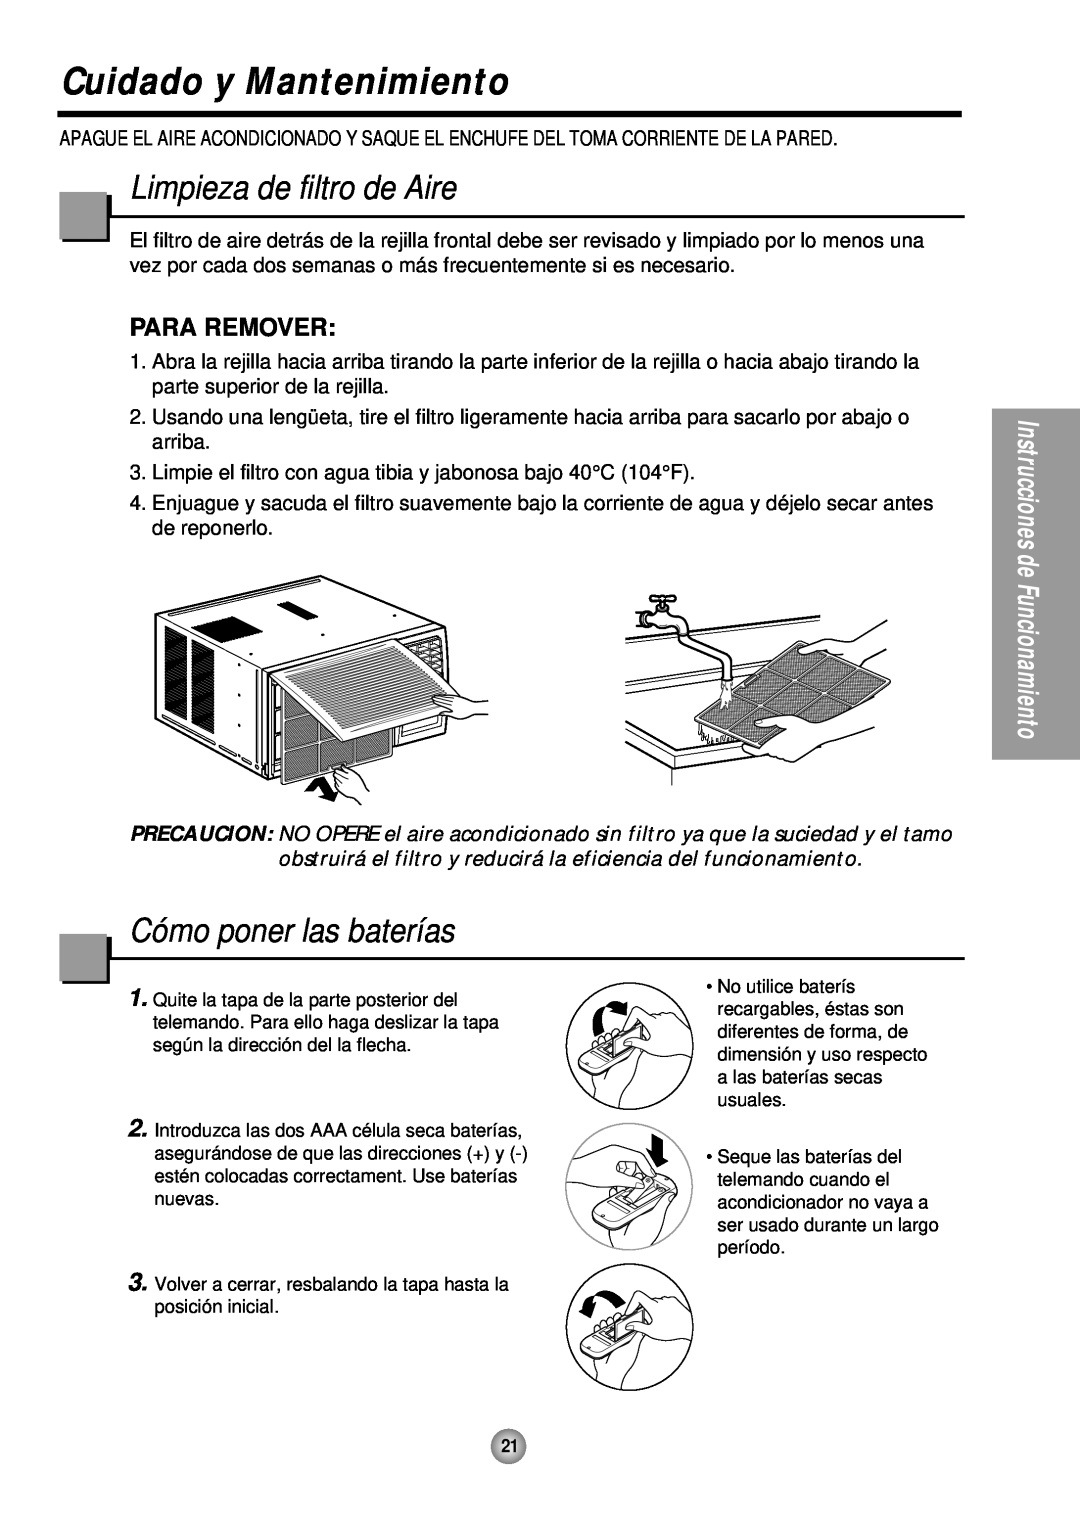 Panasonic CW-XC243HU manual Cuidado y Mantenimiento, Limpieza de filtro de Aire, Cómo poner las baterías, Para Remover 